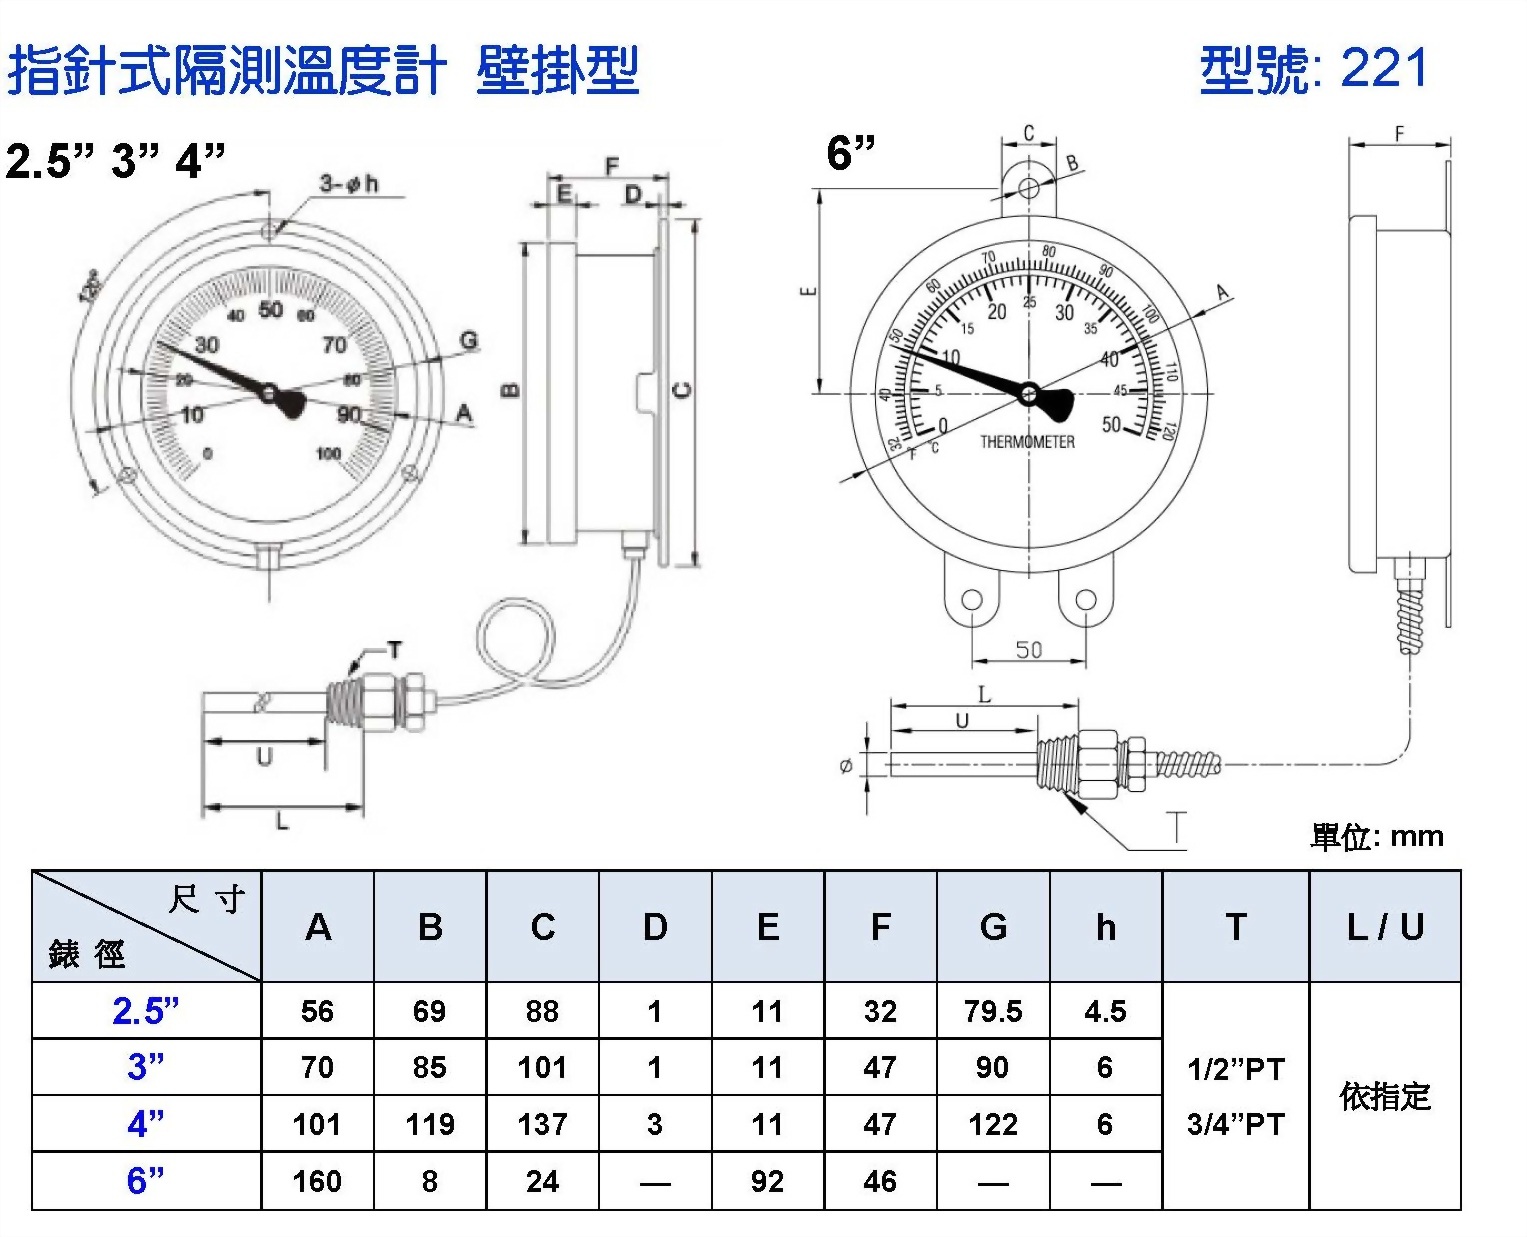 指針式隔測雙金屬溫度計 壁掛型｜雙金屬溫度錶│工業用溫度計表頭規格 - 昌揚科技有限公司